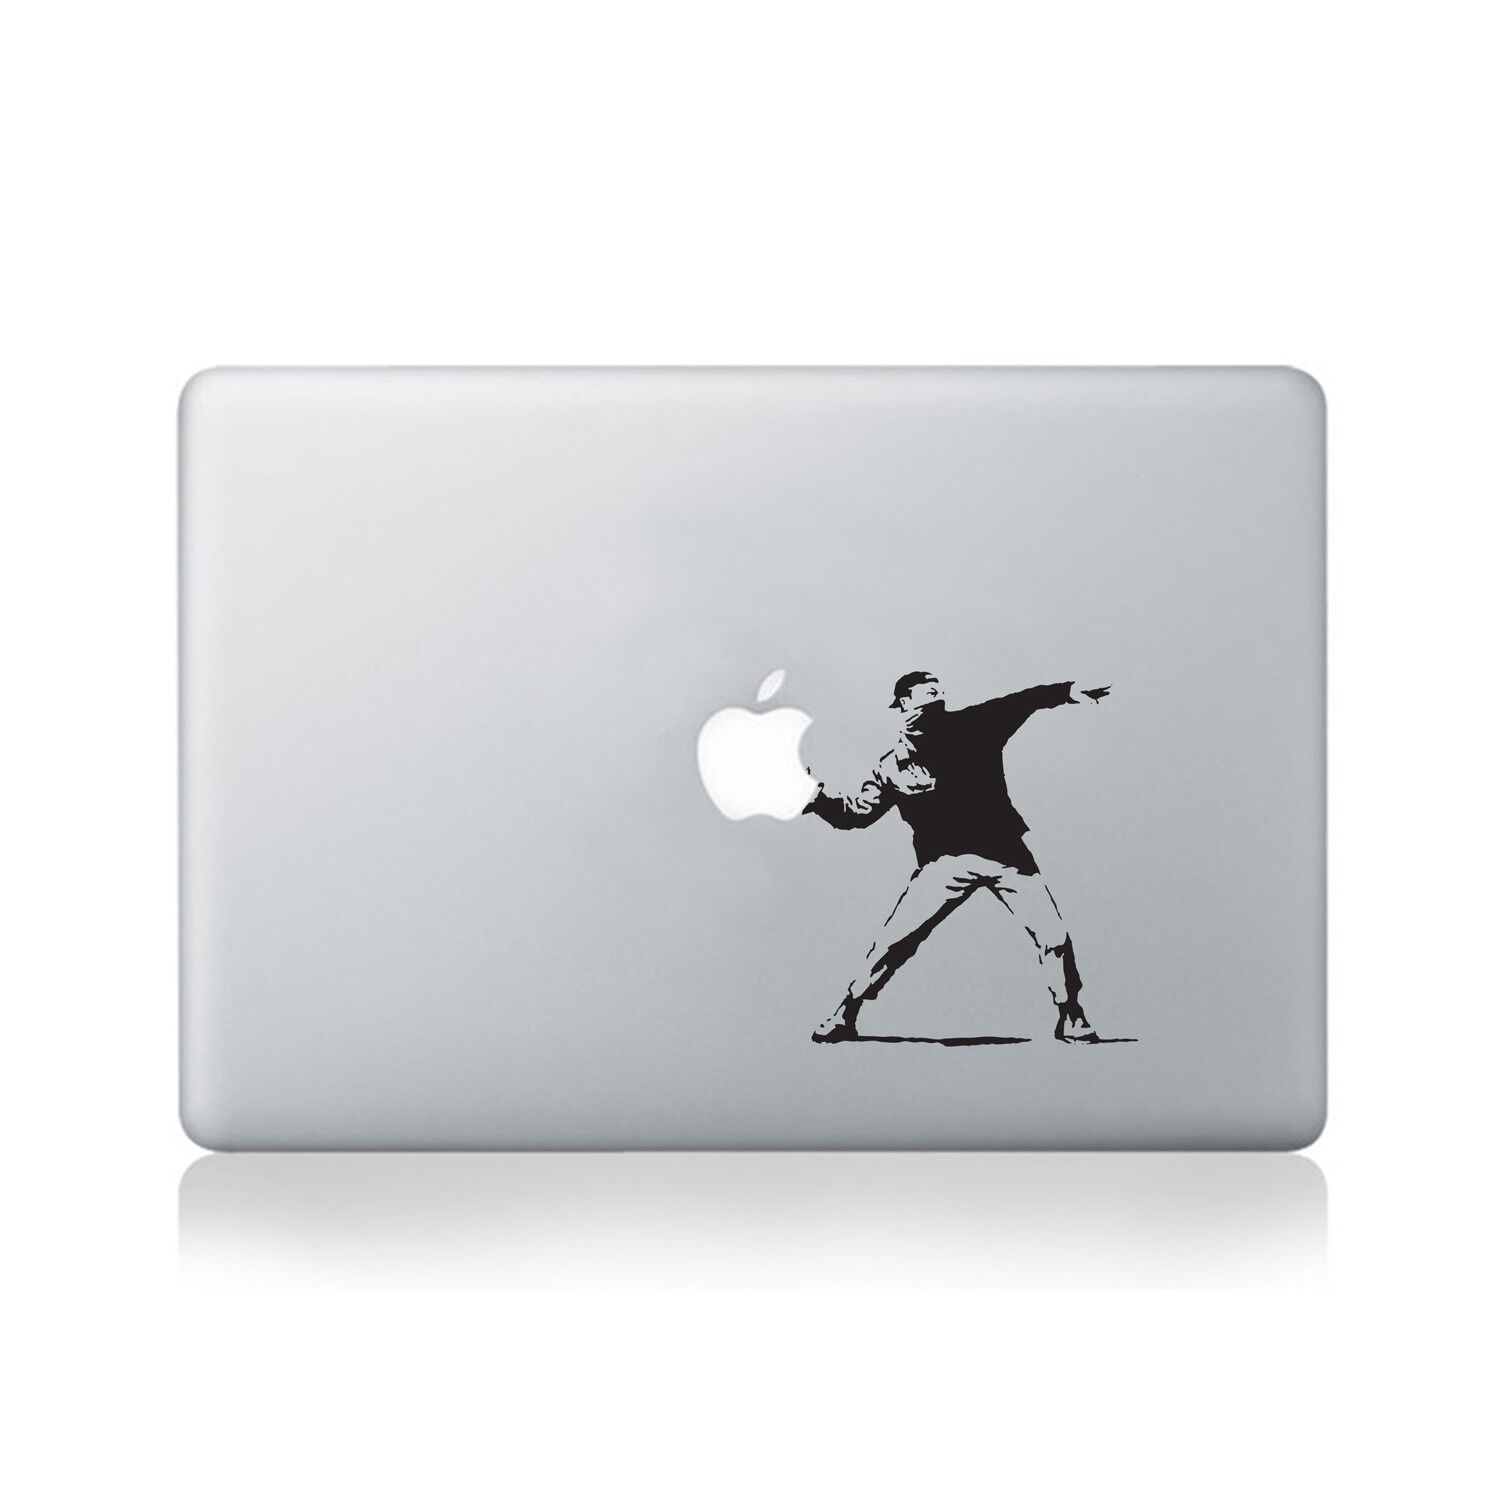 Banksy Throwing Man Vinyl Decal for Macbook